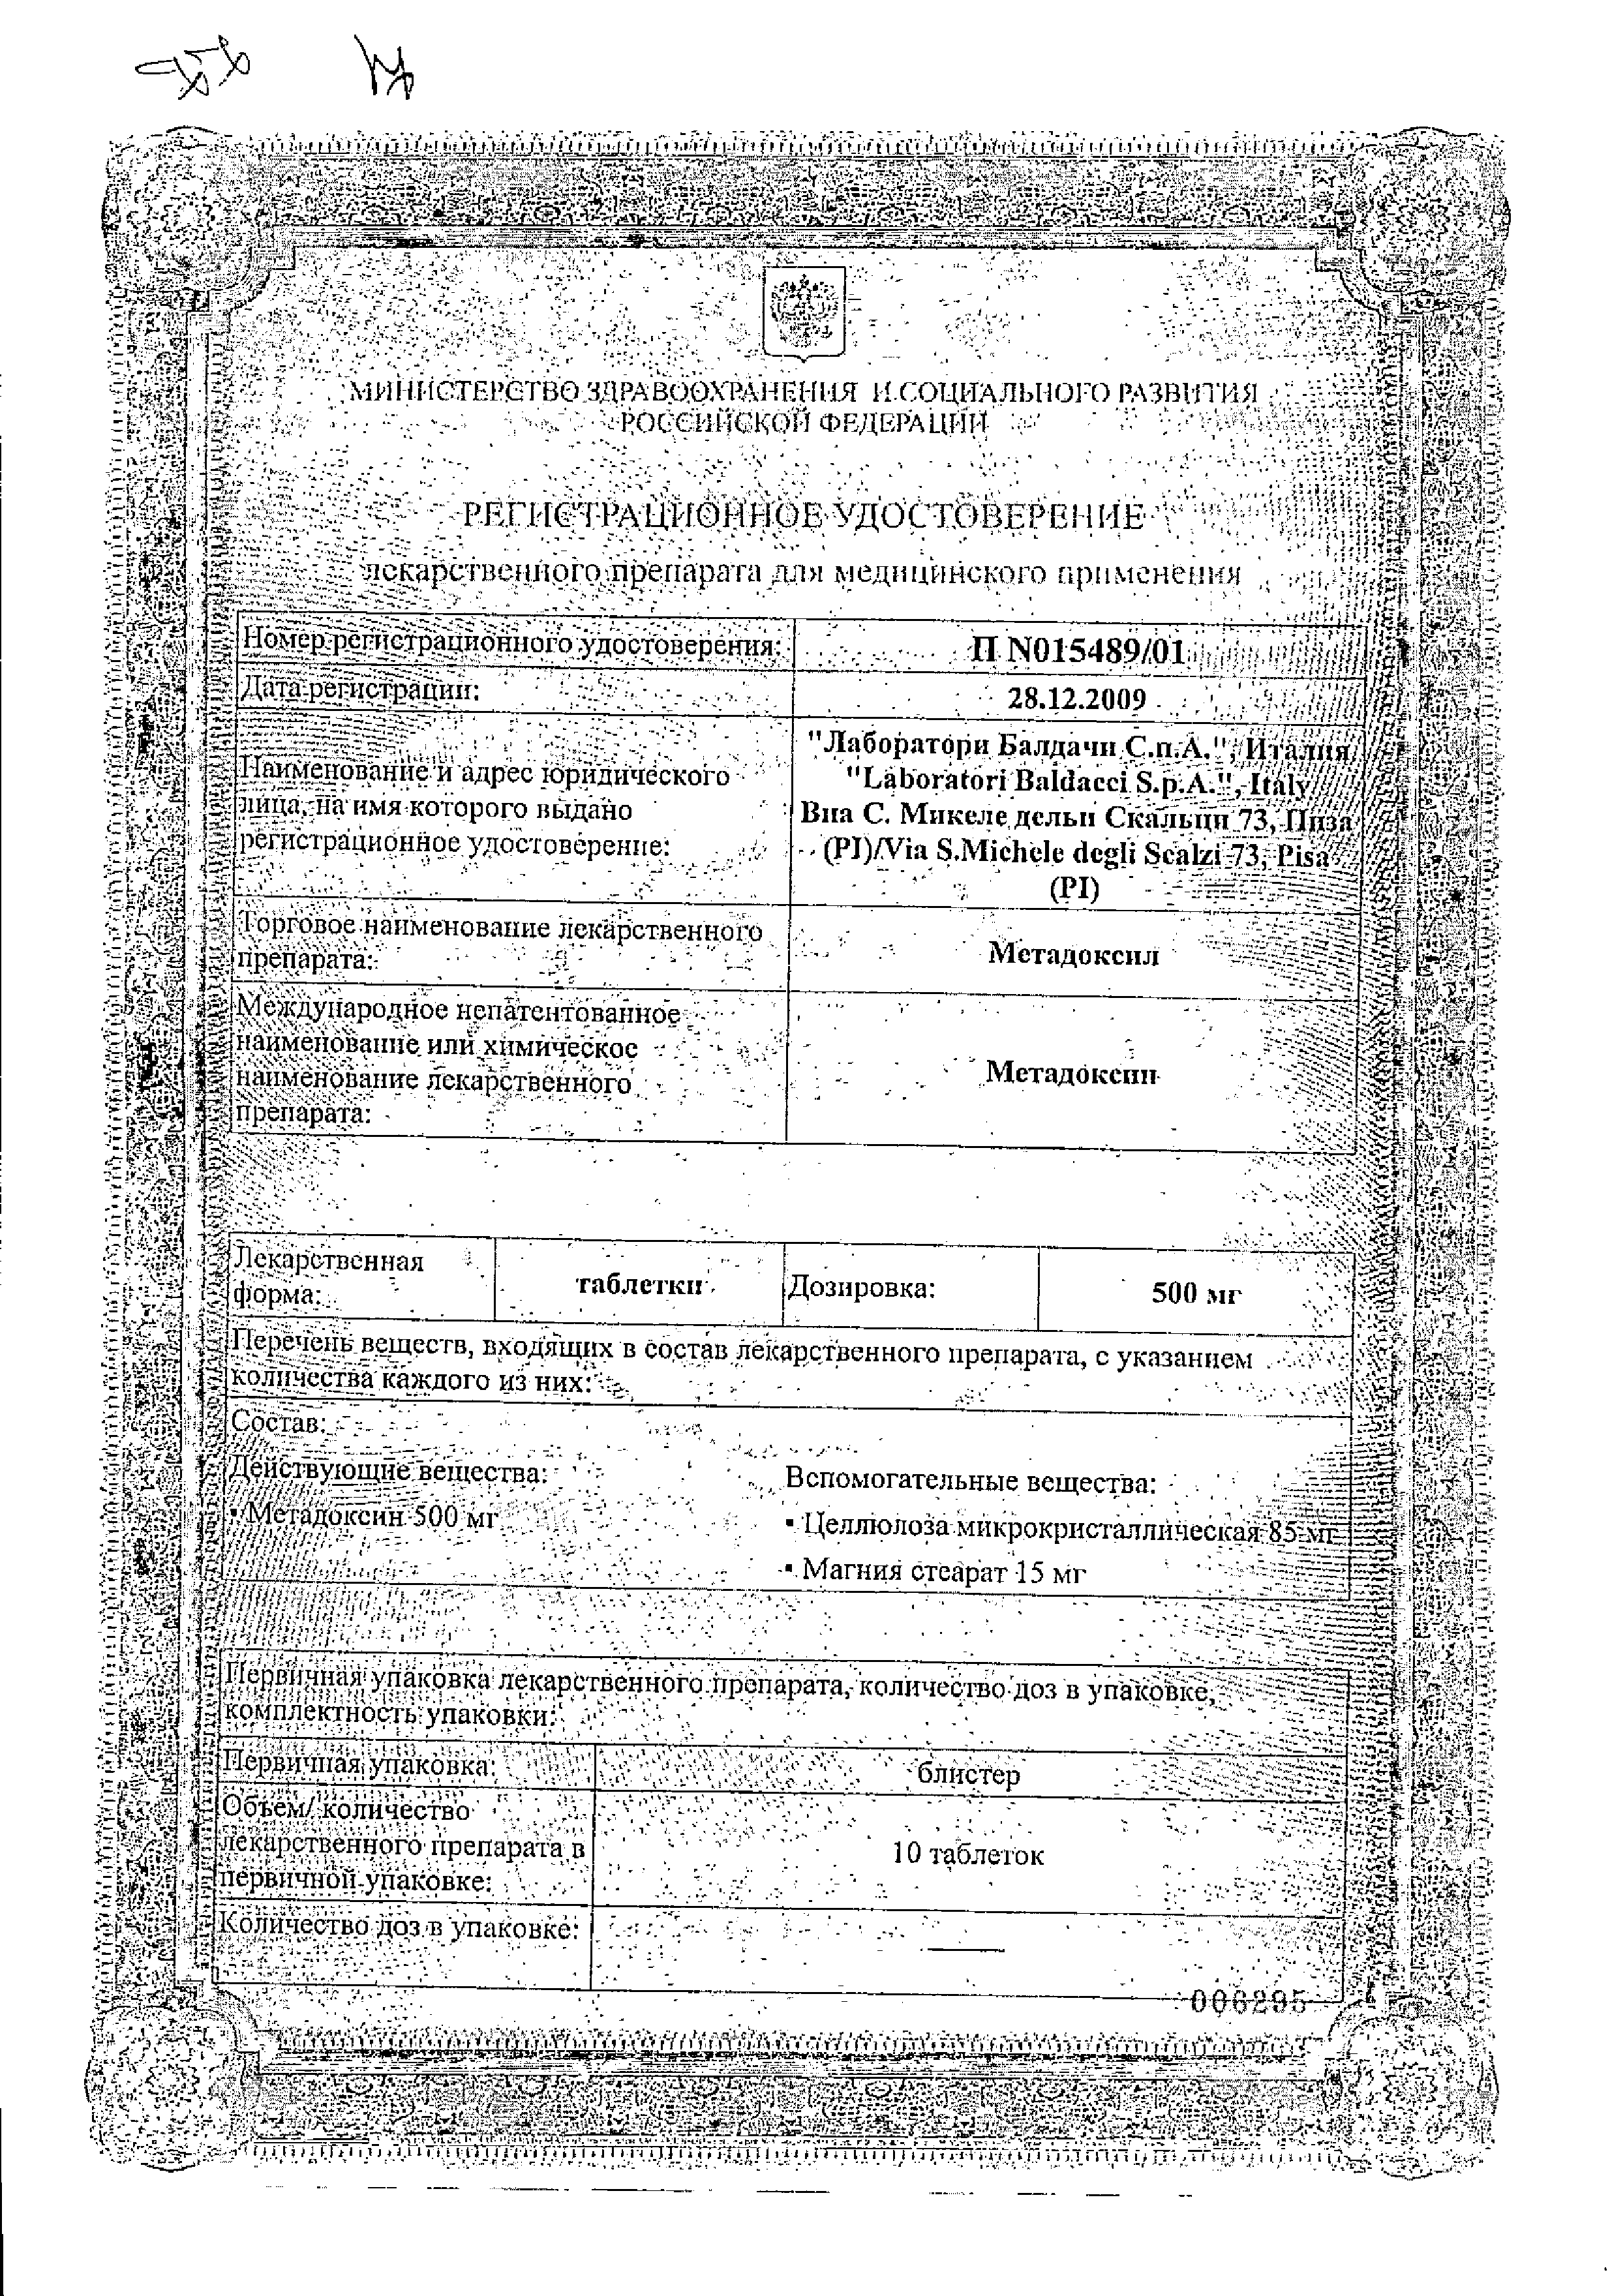 Метадоксил сертификат